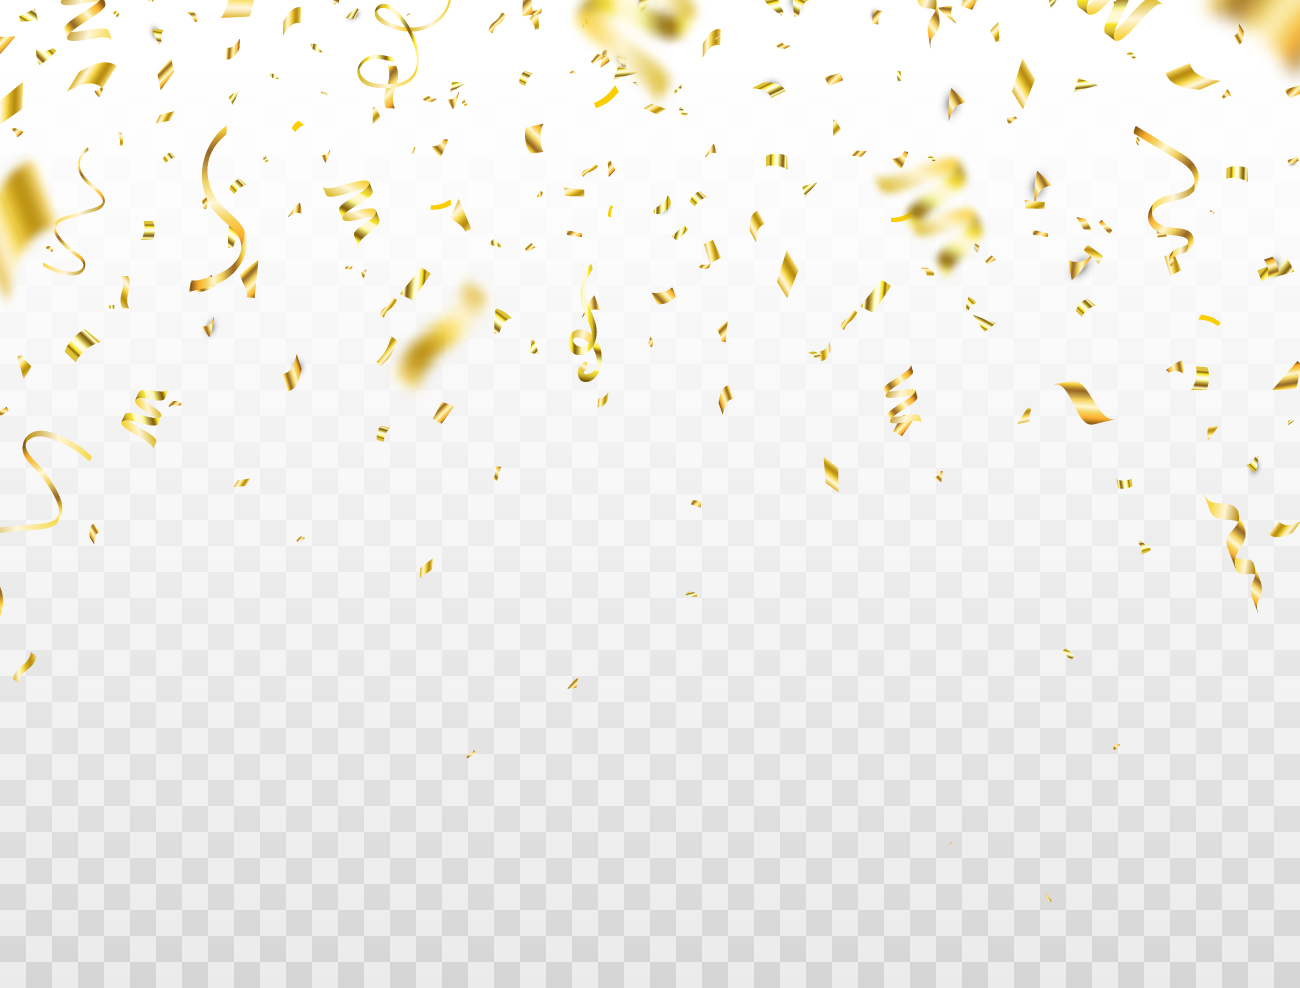 周年庆节日庆祝胜利成功派对金纸装饰元素ESP矢量设计素材